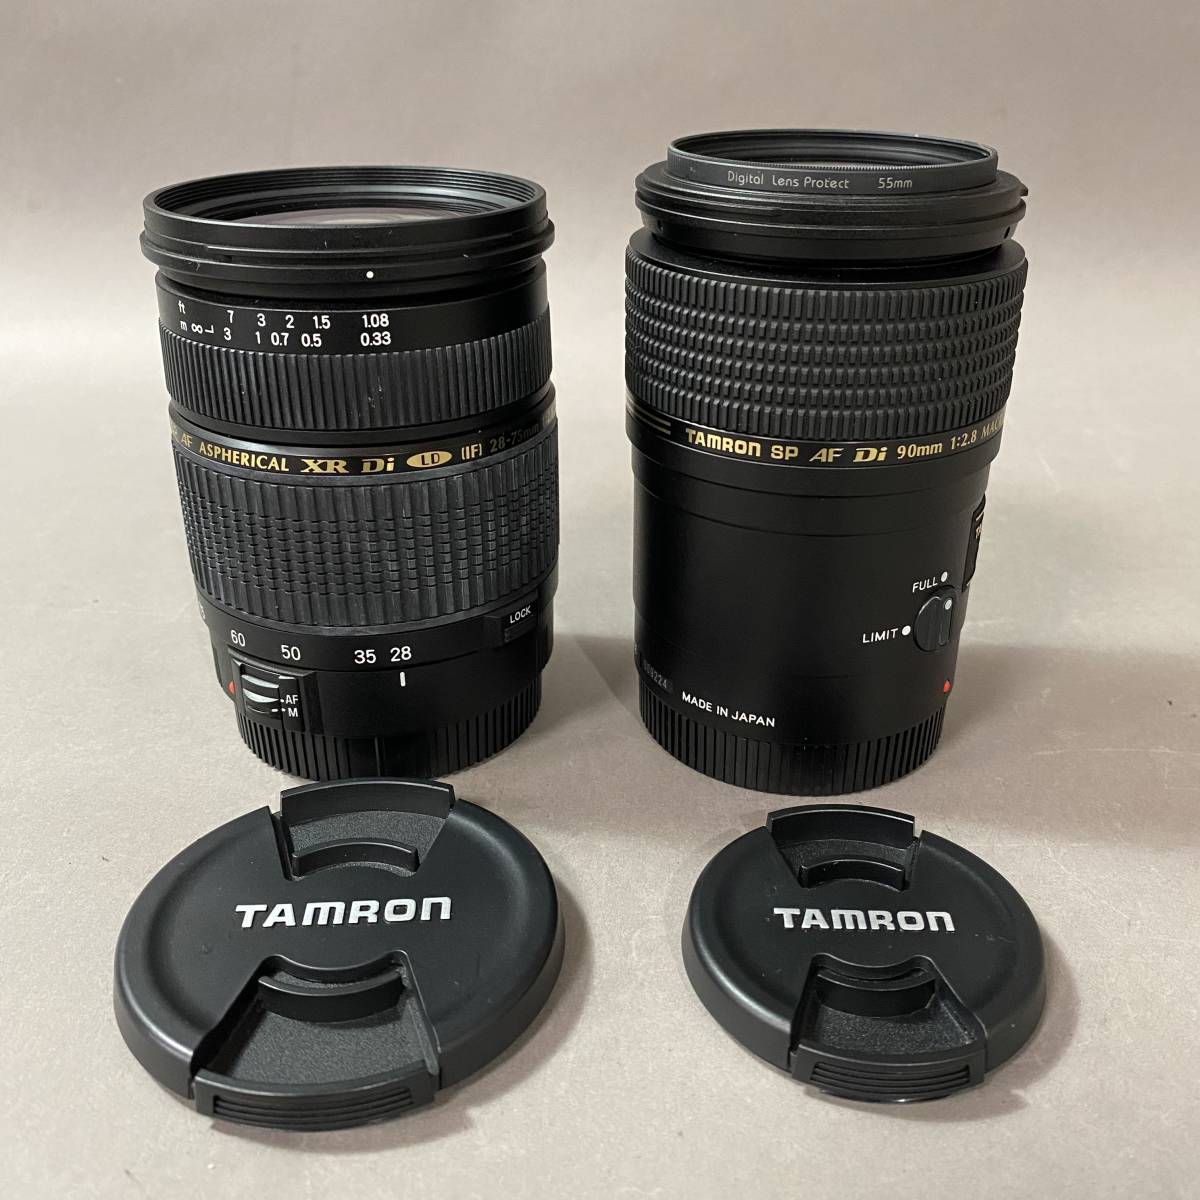 RS133 TAMRON SP レンズ 2点まとめ AF ASPHERICAL XR Di LD 28-75mm 1:2.8 MACRO φ67 90mm 1:2.8 MACRO φ55 タムロン カメラ パーツ 撮影_画像1